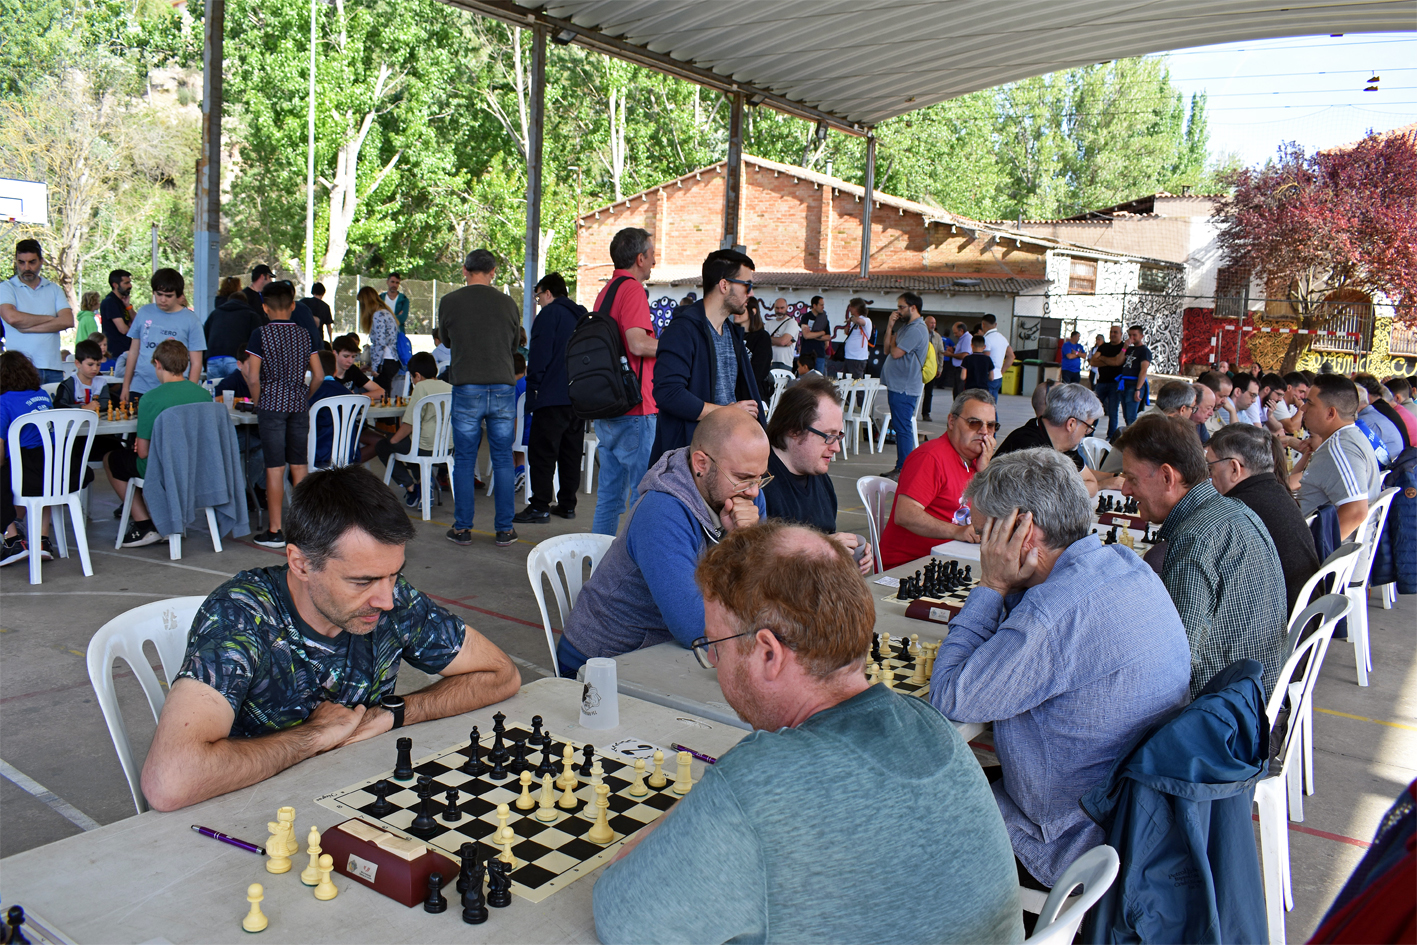 El Club d'Escacs Súria i Escacs Catalònia Joviat celebren el 75è aniversari amb una participada festa escaquista